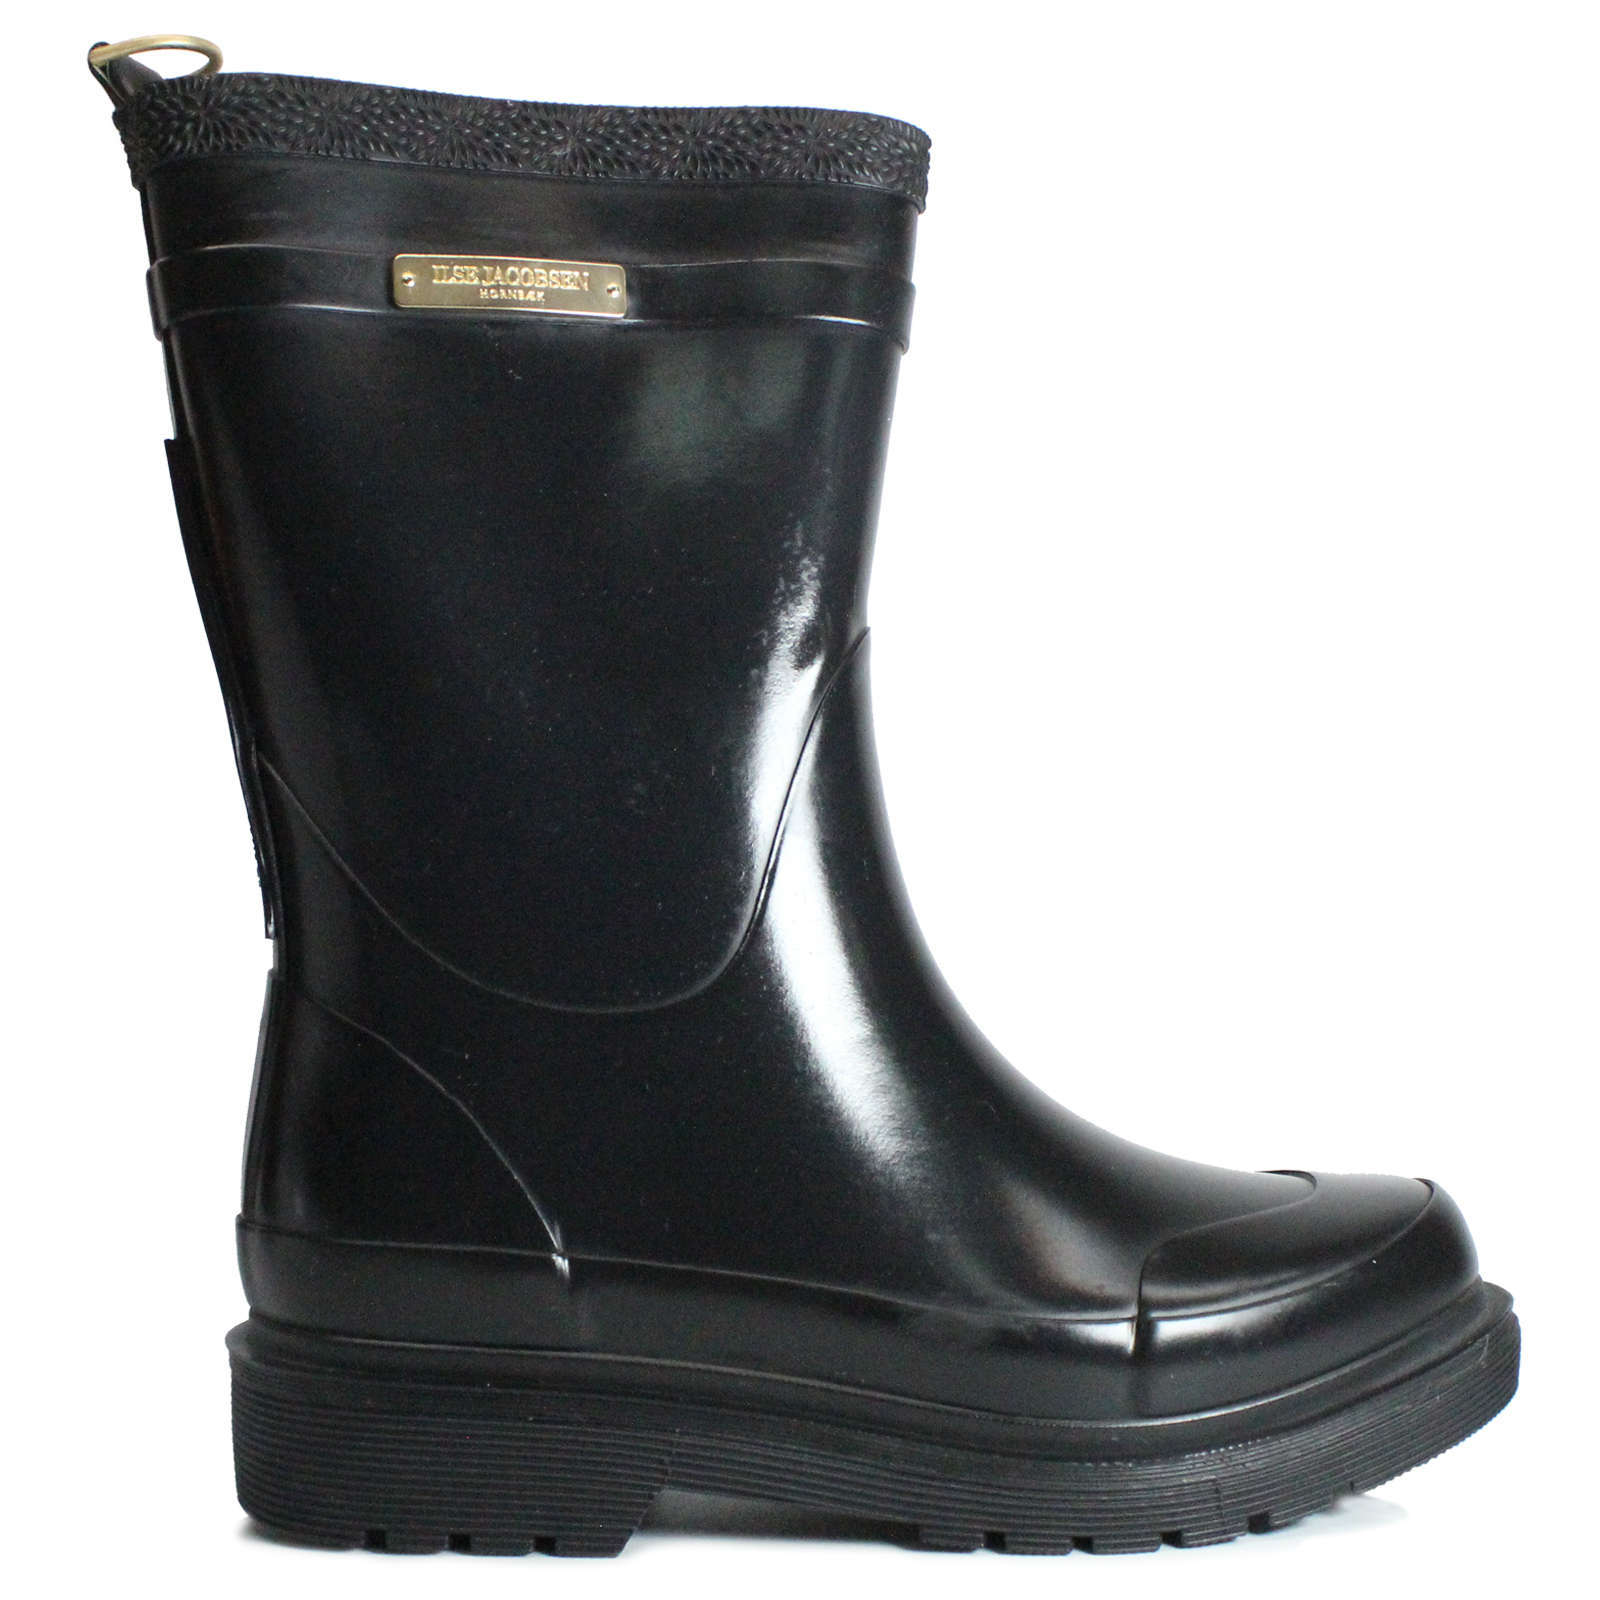 Ilse Jacobsen Rub300 Rubber Women's Medium Wellington Boots#color_black